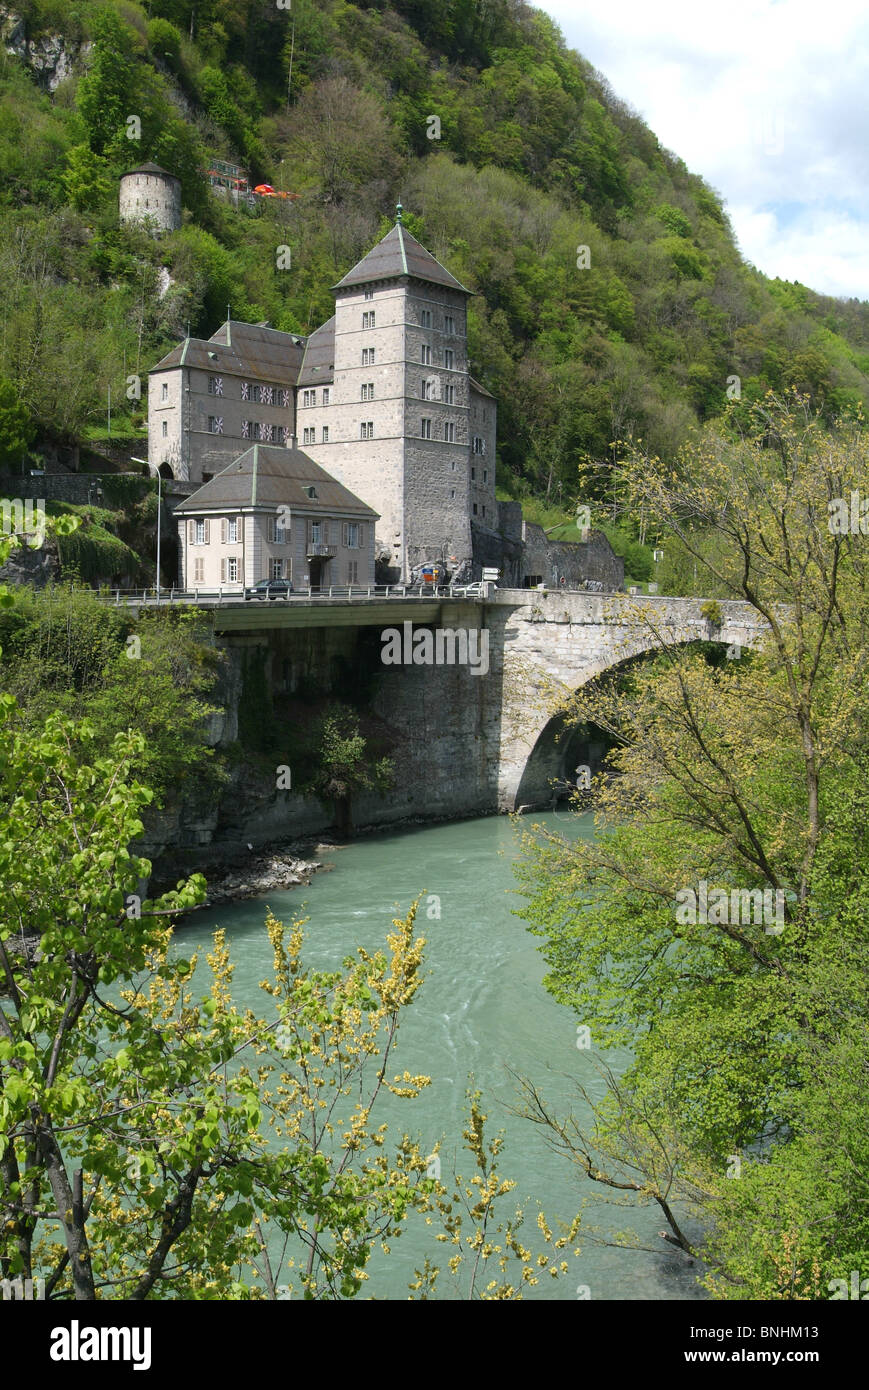 Suisse Canton du Valais Saint-Maurice château Dufour et tour du pont de la rivière historique Alpes montagne montagnes Banque D'Images